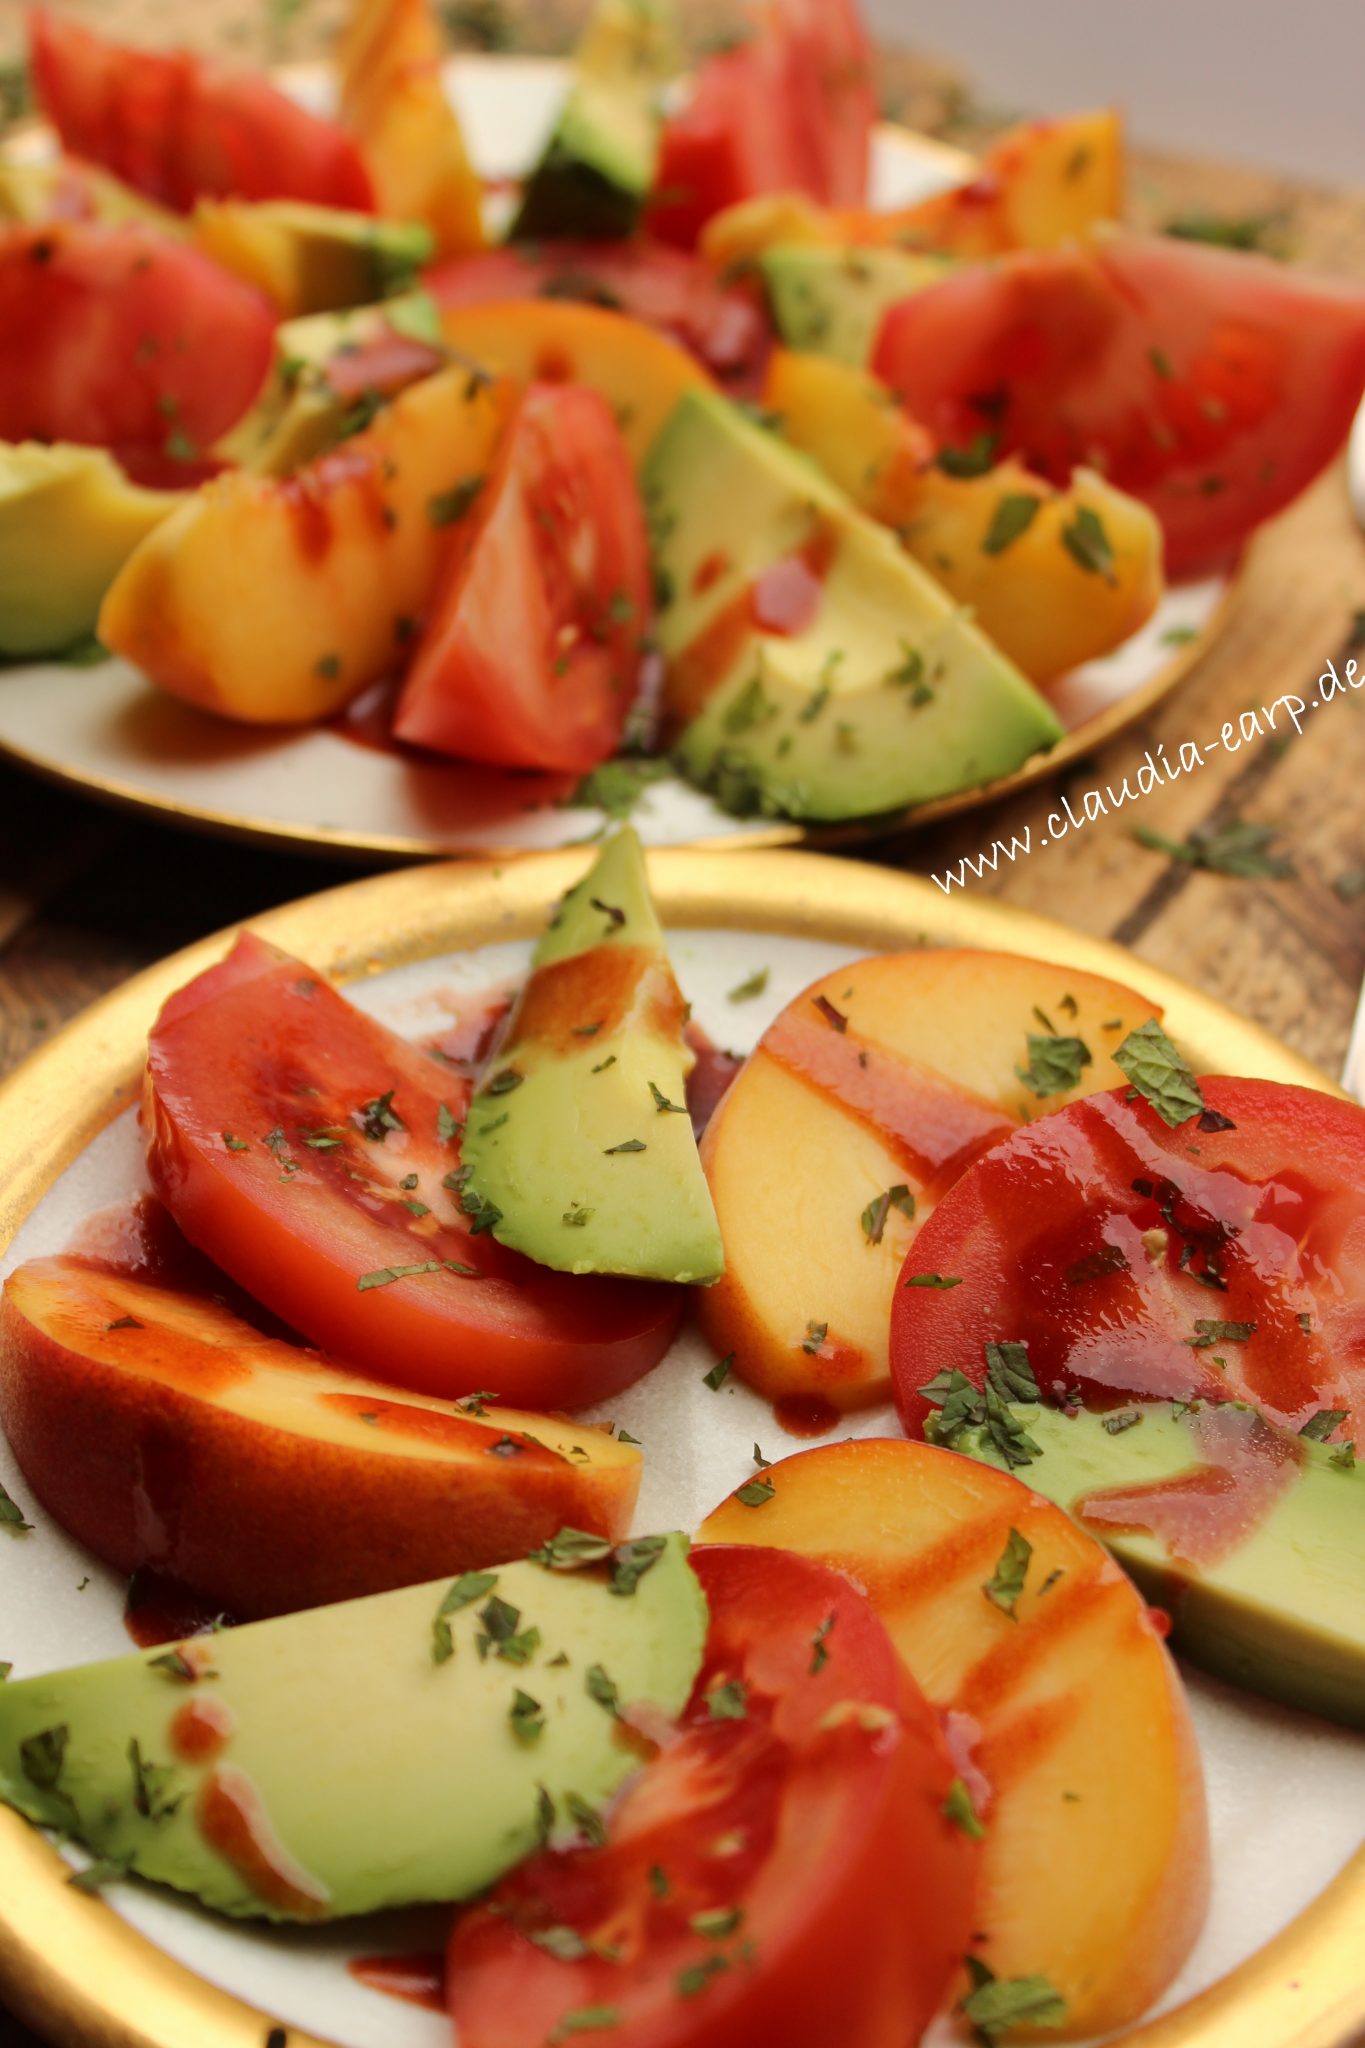 Tomaten-Pfirsich und Avocado-Salat mit Himbeer-Vinaigrette